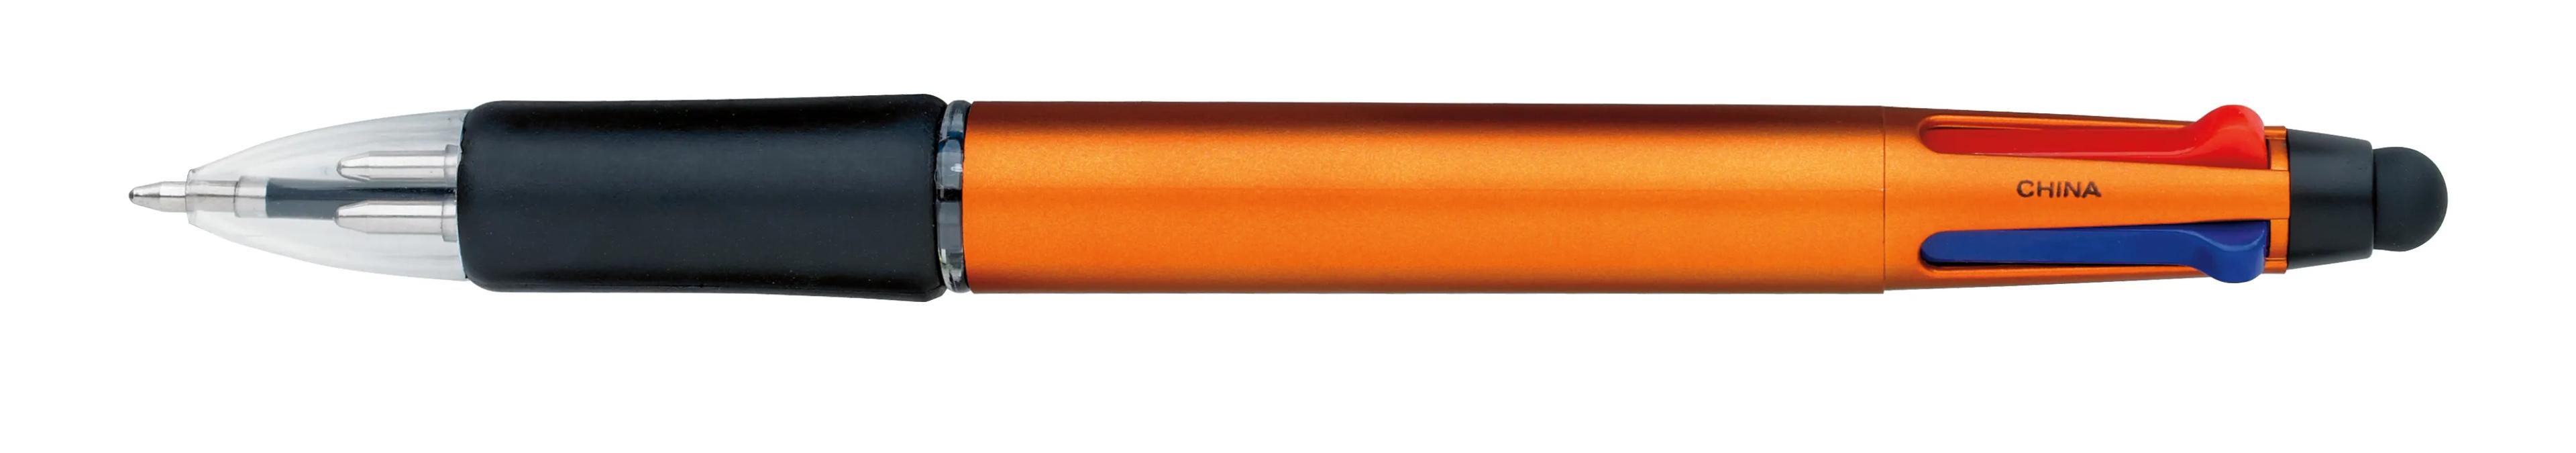 Orbitor Metallic Stylus Pen 20 of 56